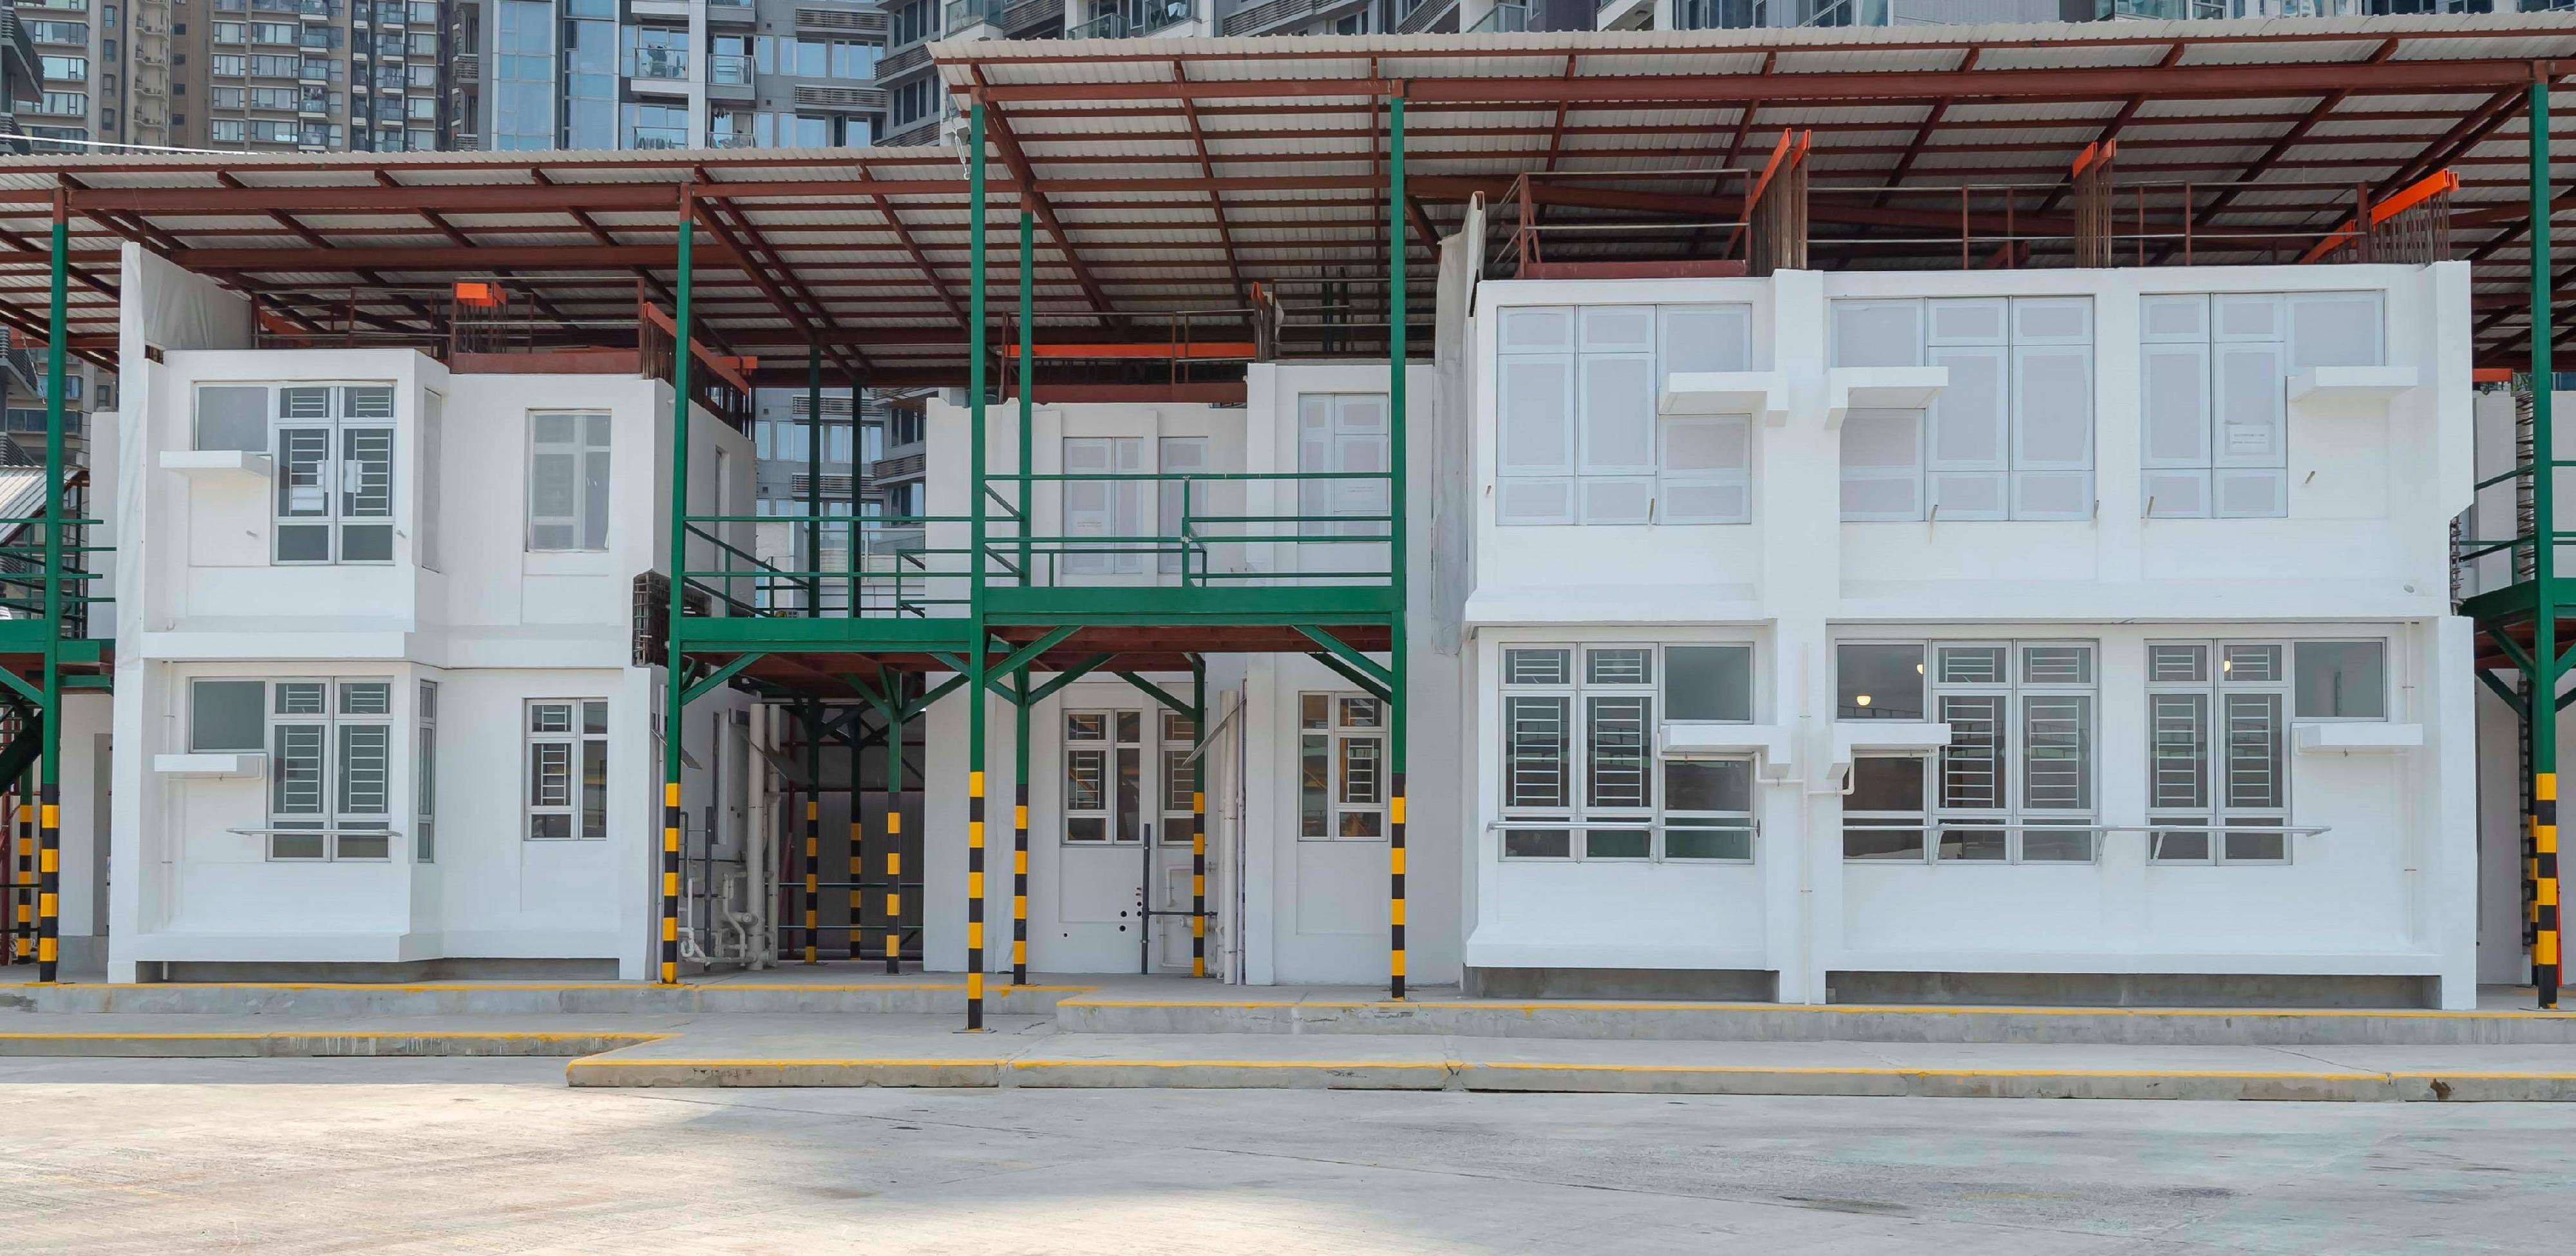 香港房屋委員會今日（三月三十一日）安排傳媒參觀東涌第99區公營房屋發展項目的「組裝合成」建築法模擬搭建單位。圖示「組裝合成」建築法模擬搭建單位的外部情況。